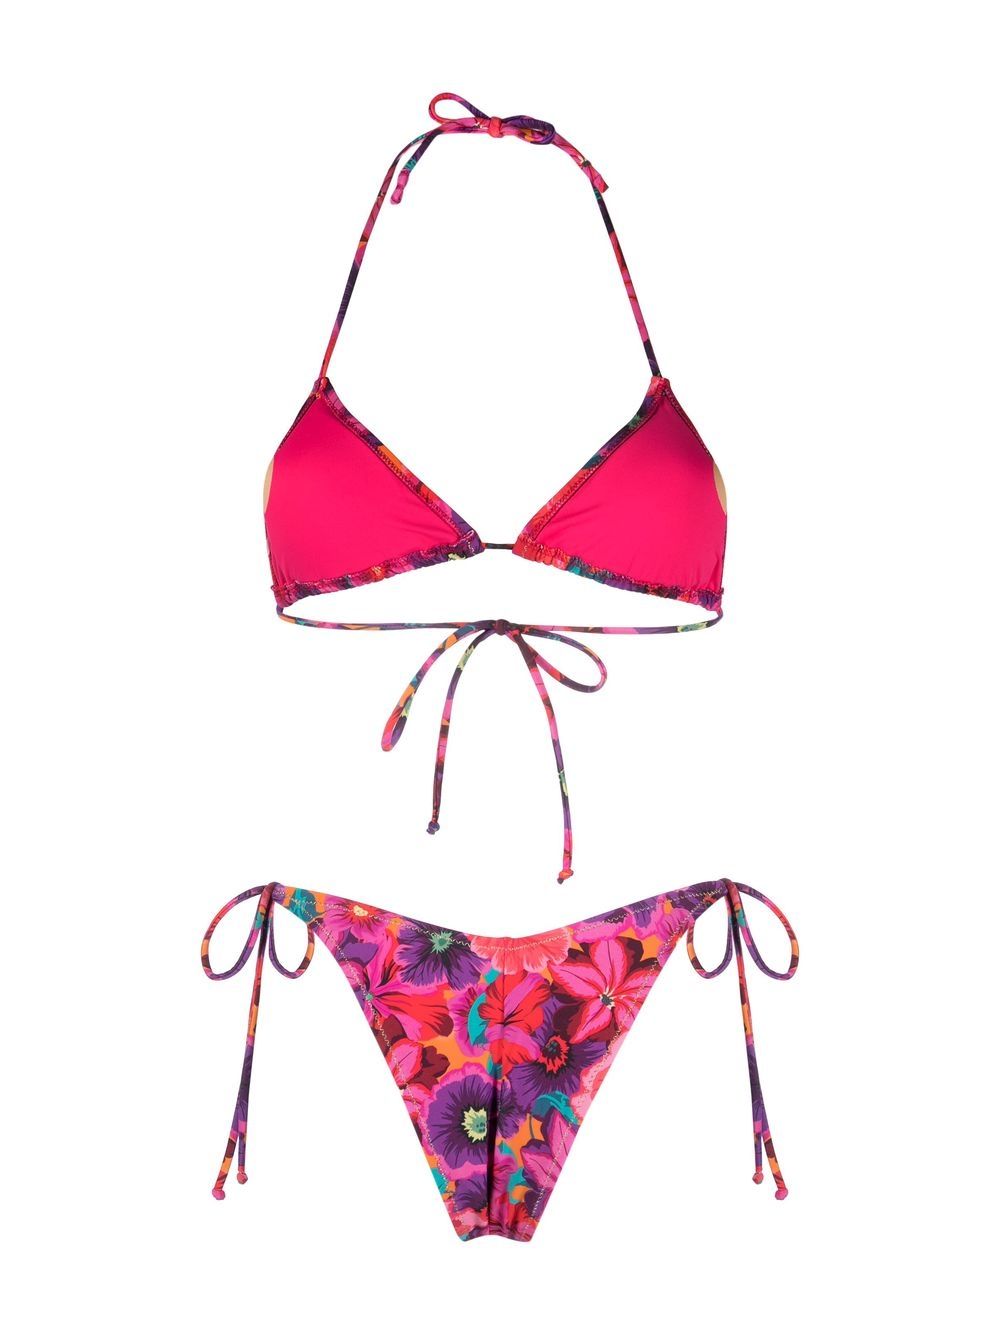 Reina Olga Susan floral-print bikini | Smart Closet